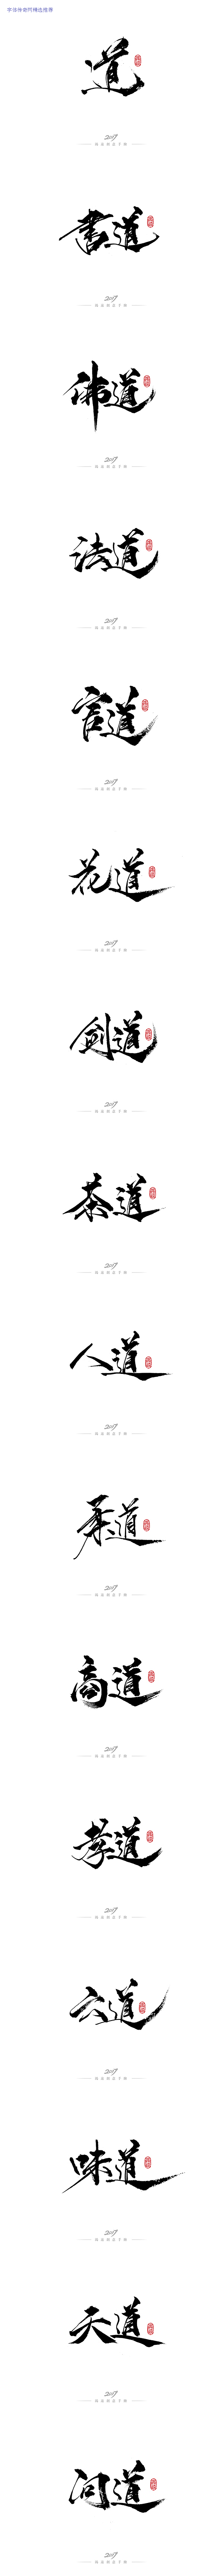 鴻-書（道）-字体传奇网-中国首个字体品...